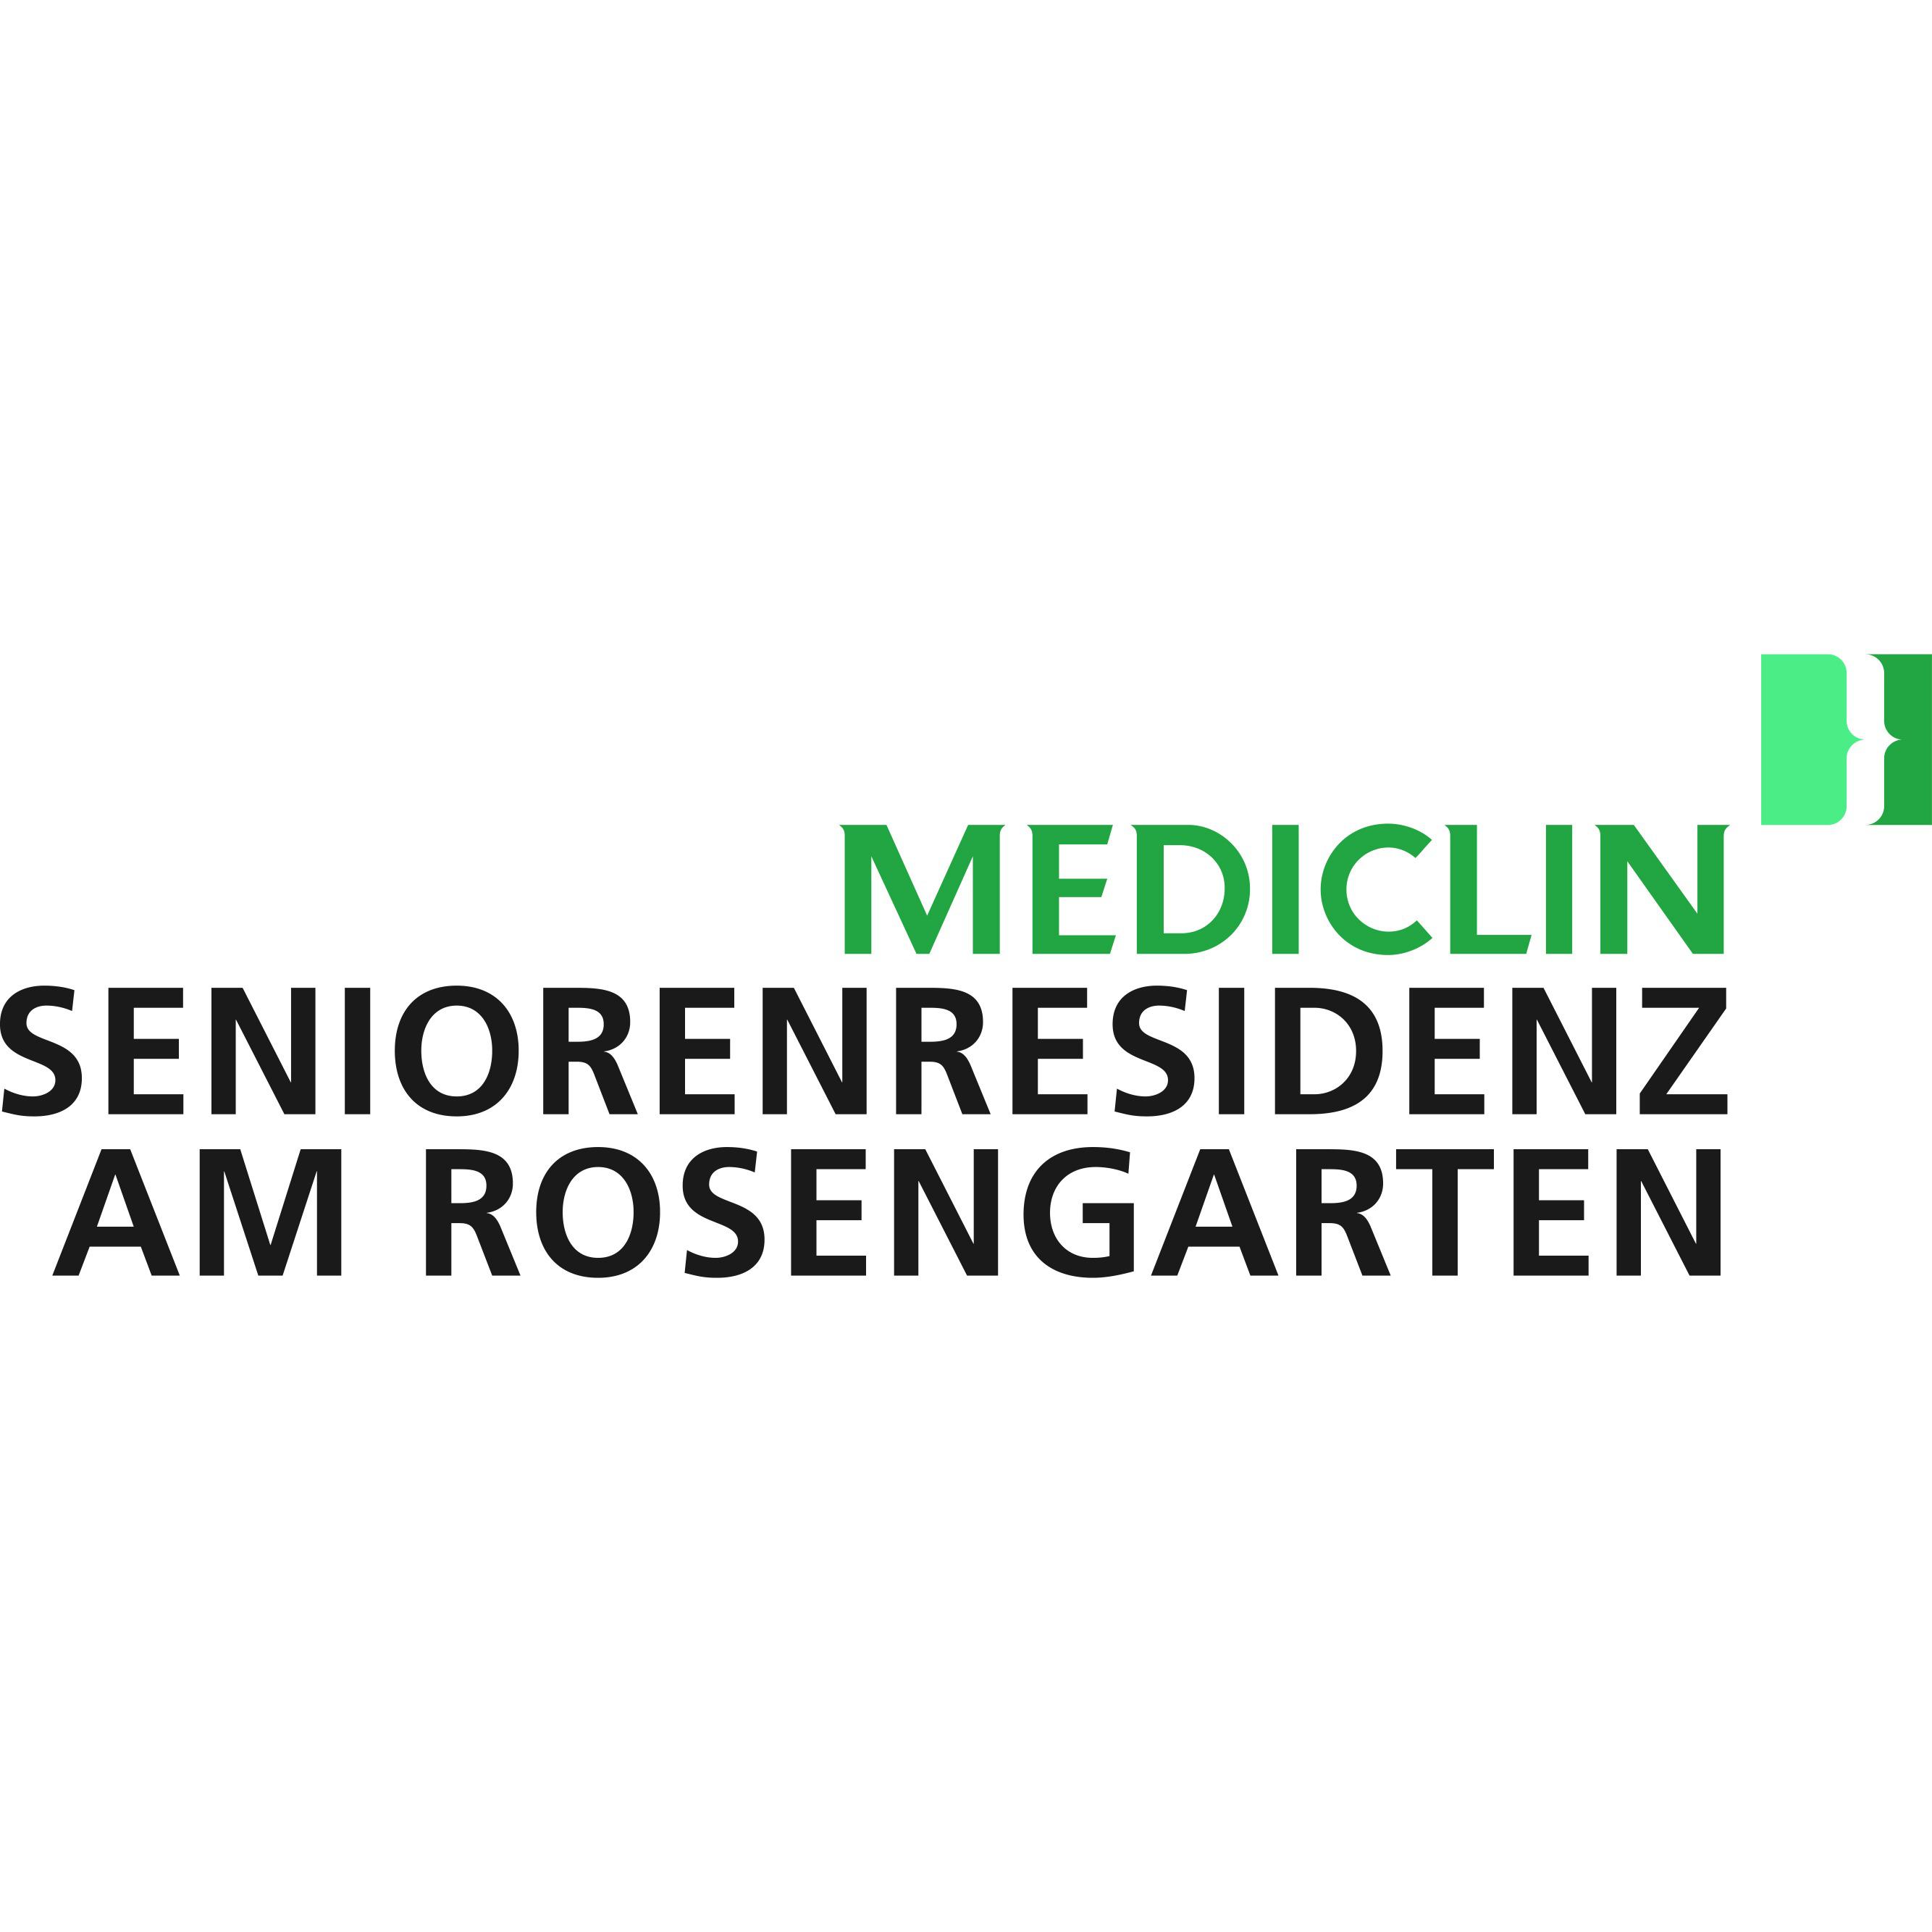 MEDICLIN Seniorenresidenz Am Rosengarten in Horn Bad Meinberg - Logo